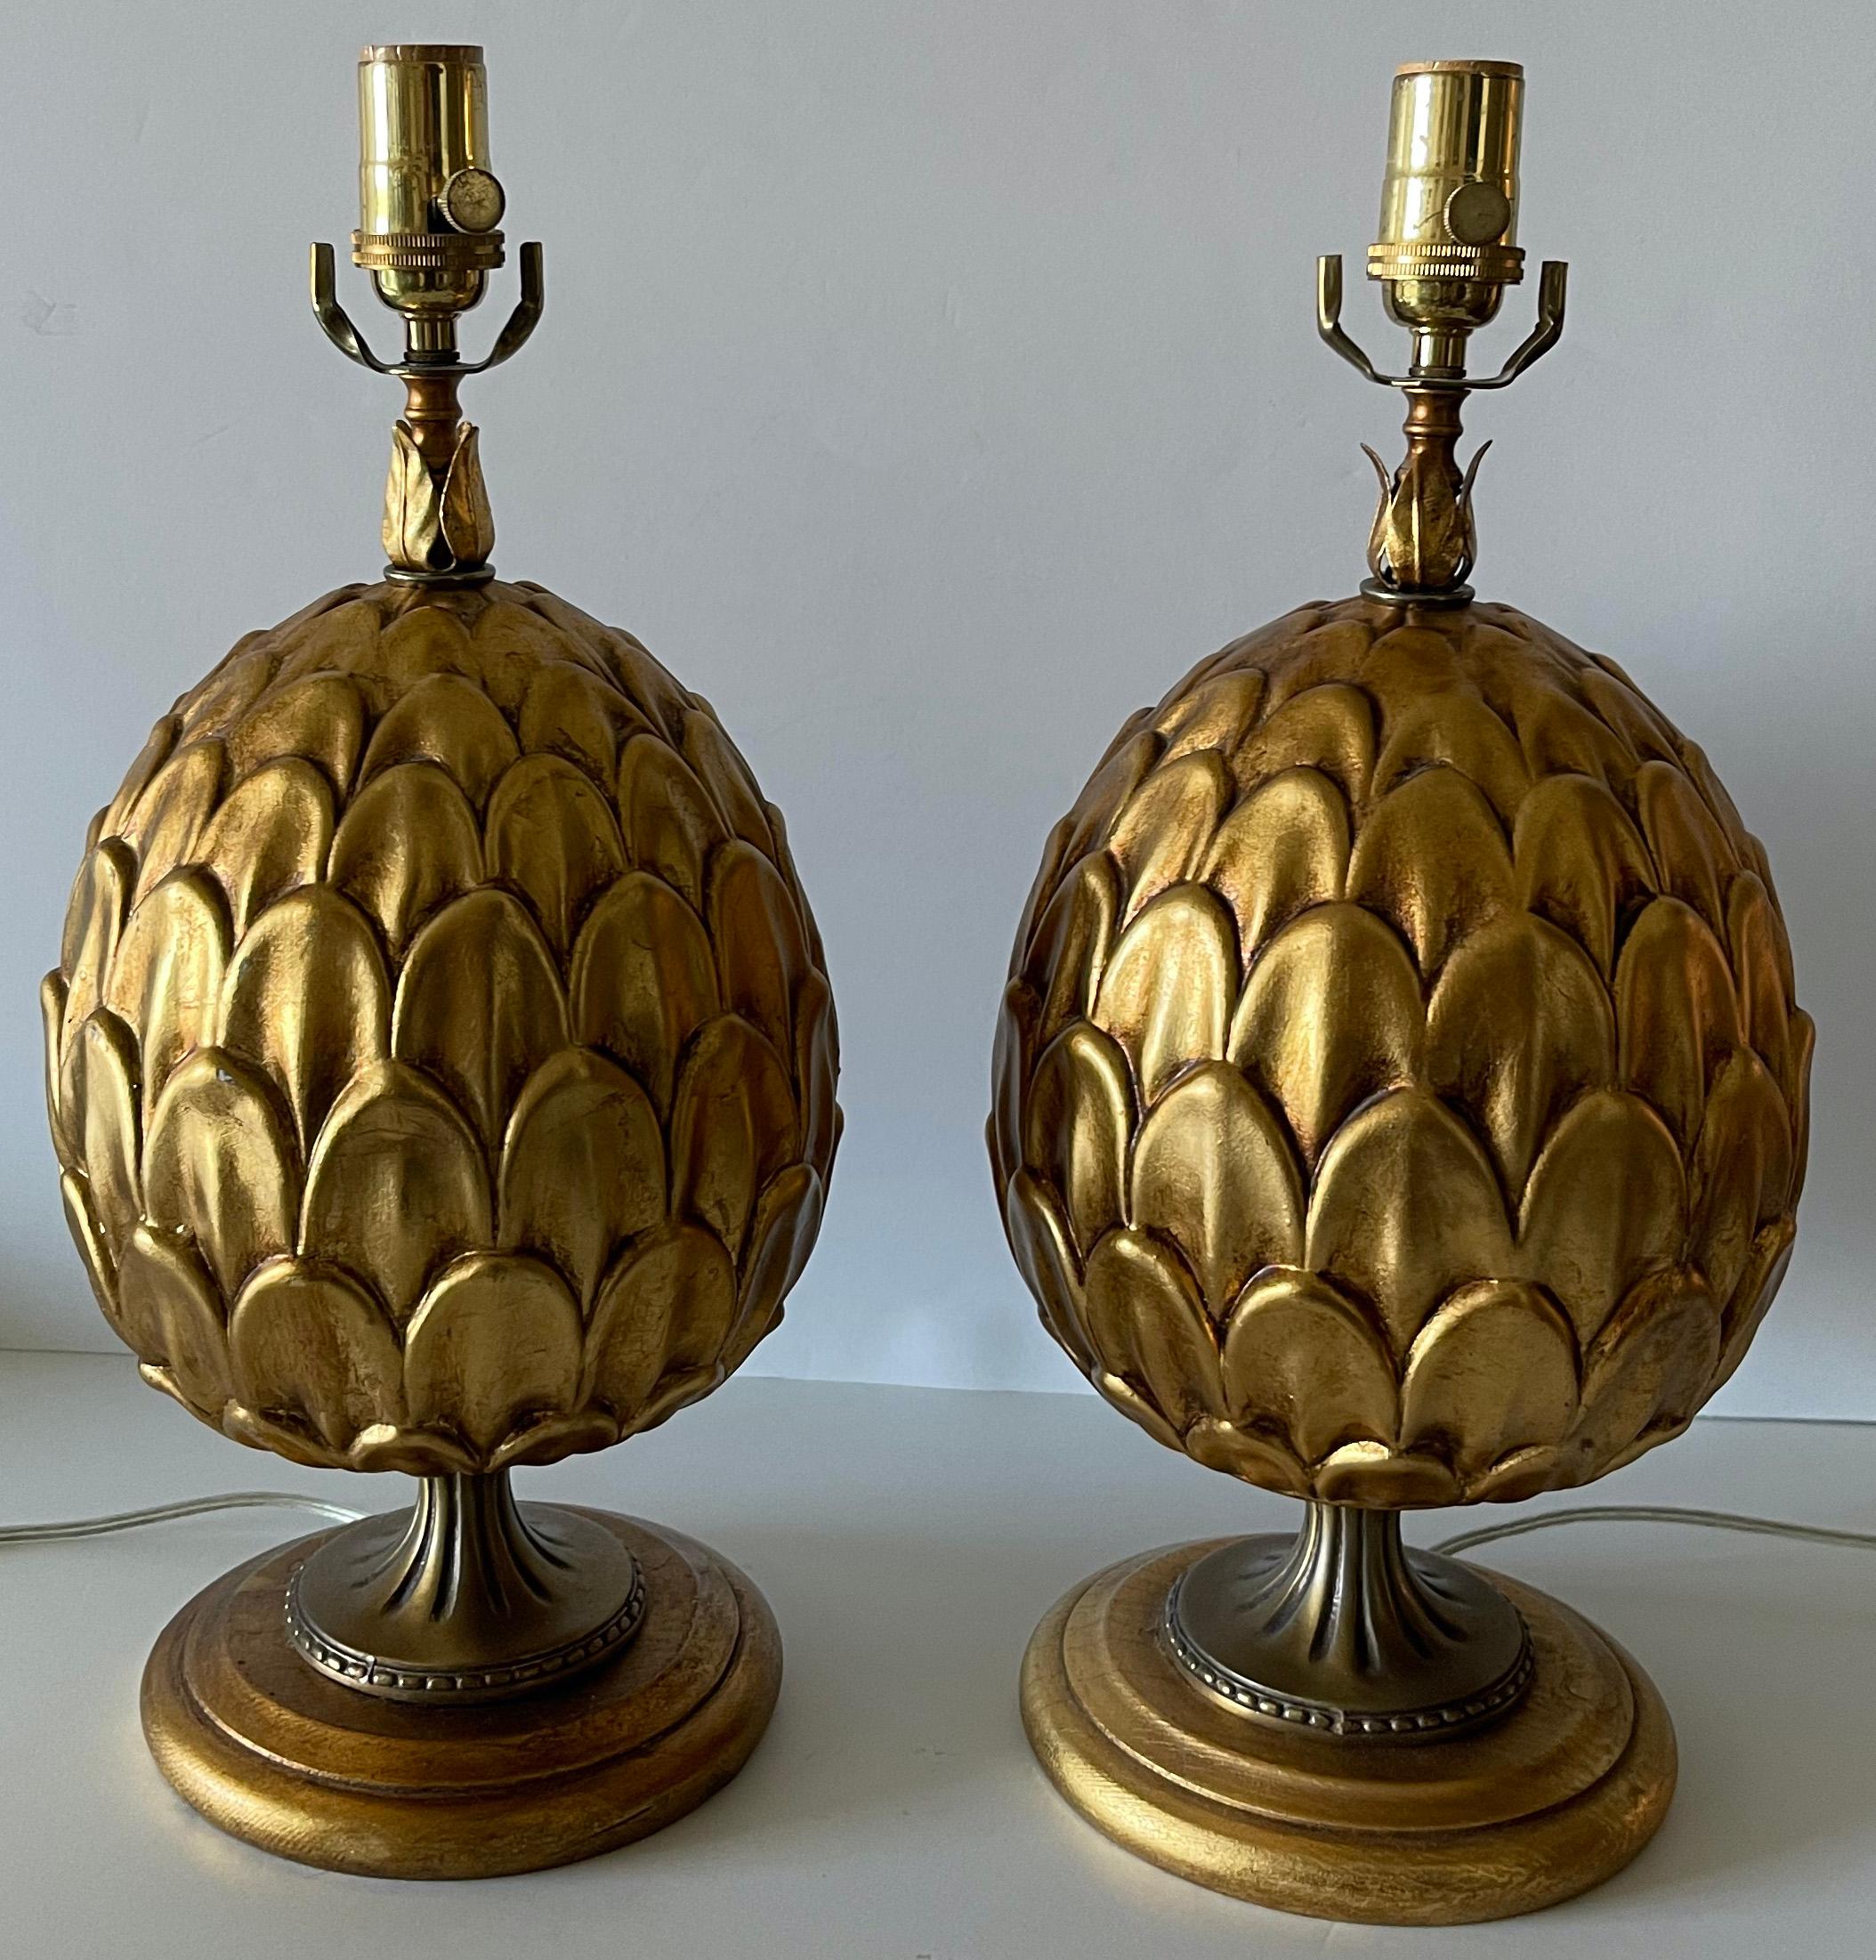 Paire de lampes artichauts italiennes en métal doré. Artichaut en métal doré sur une base ronde tournée en bois doré. Le câblage a été refait à neuf avec de nouvelles prises en laiton. Chaque lampe fonctionne avec une ampoule (non incluse). 